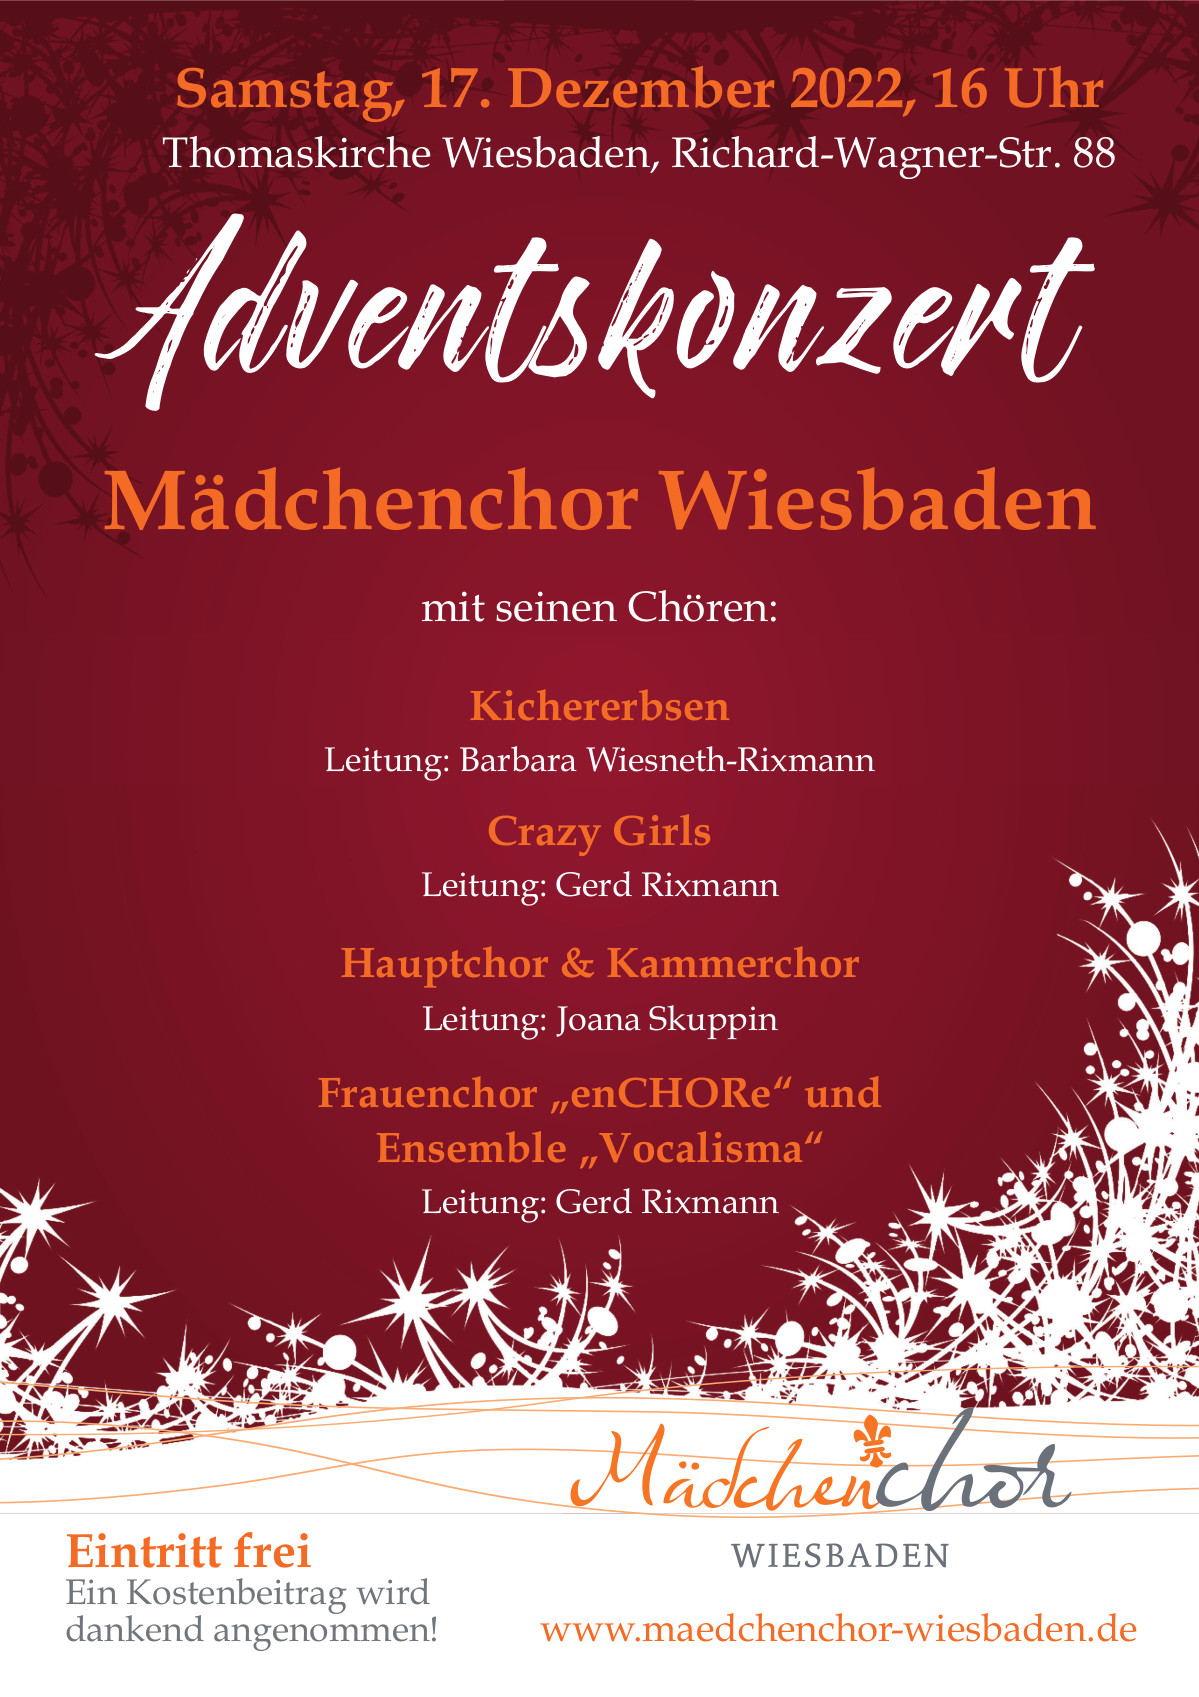 Adventskonzert des Mädchenchors Wiesbaden am 17.12. um 16 Uhr